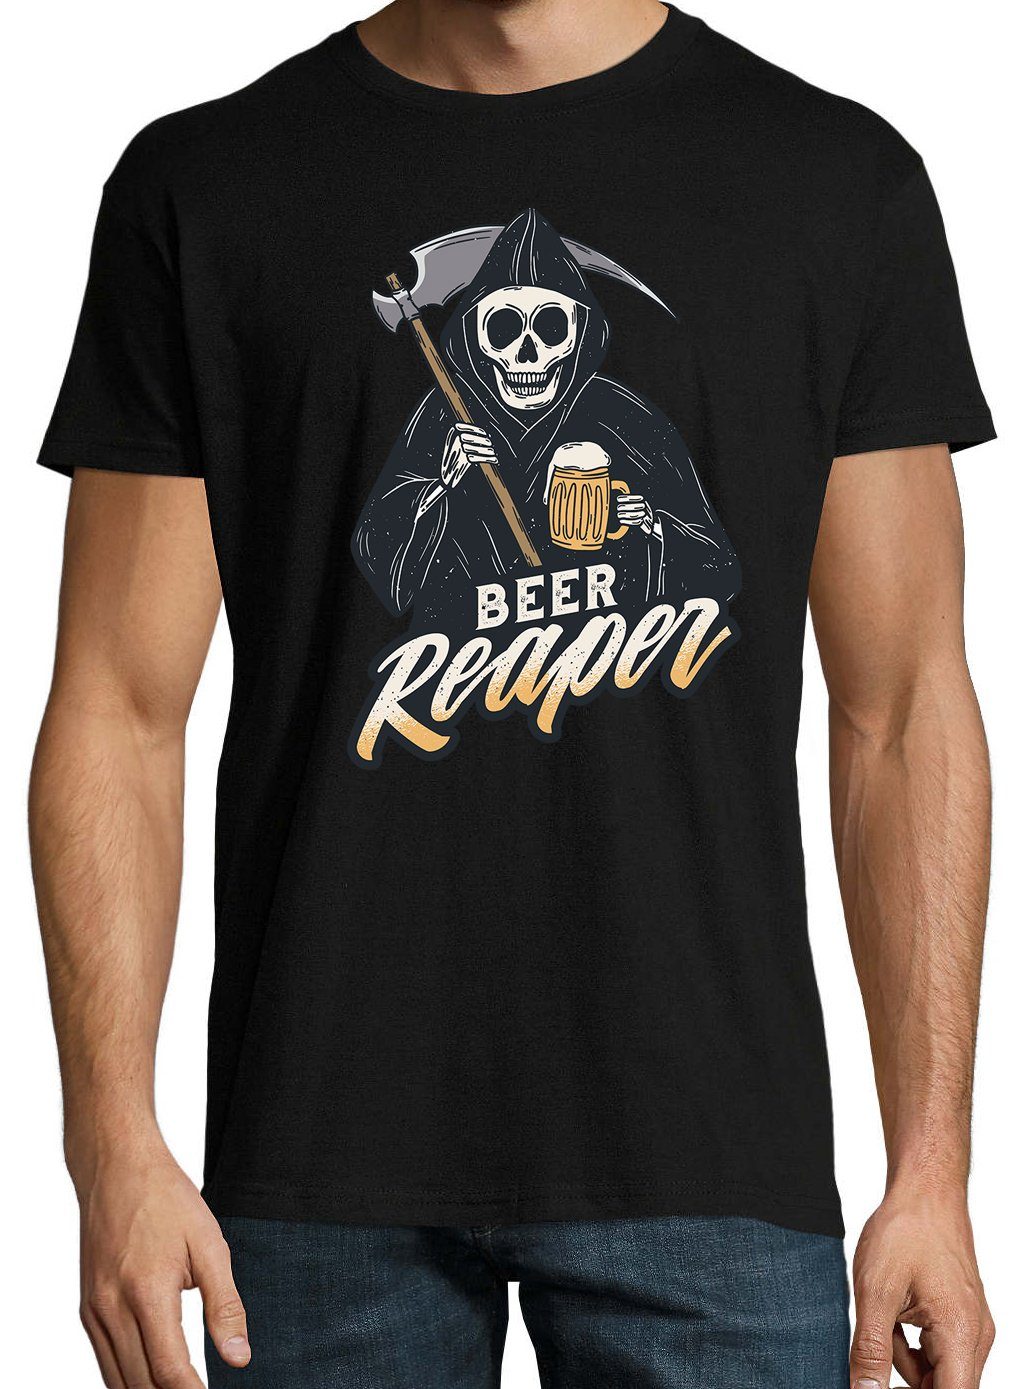 mit Designz Bier Frontprint Youth Reaper Schwarz Herren Shirt lustigem T-Shirt